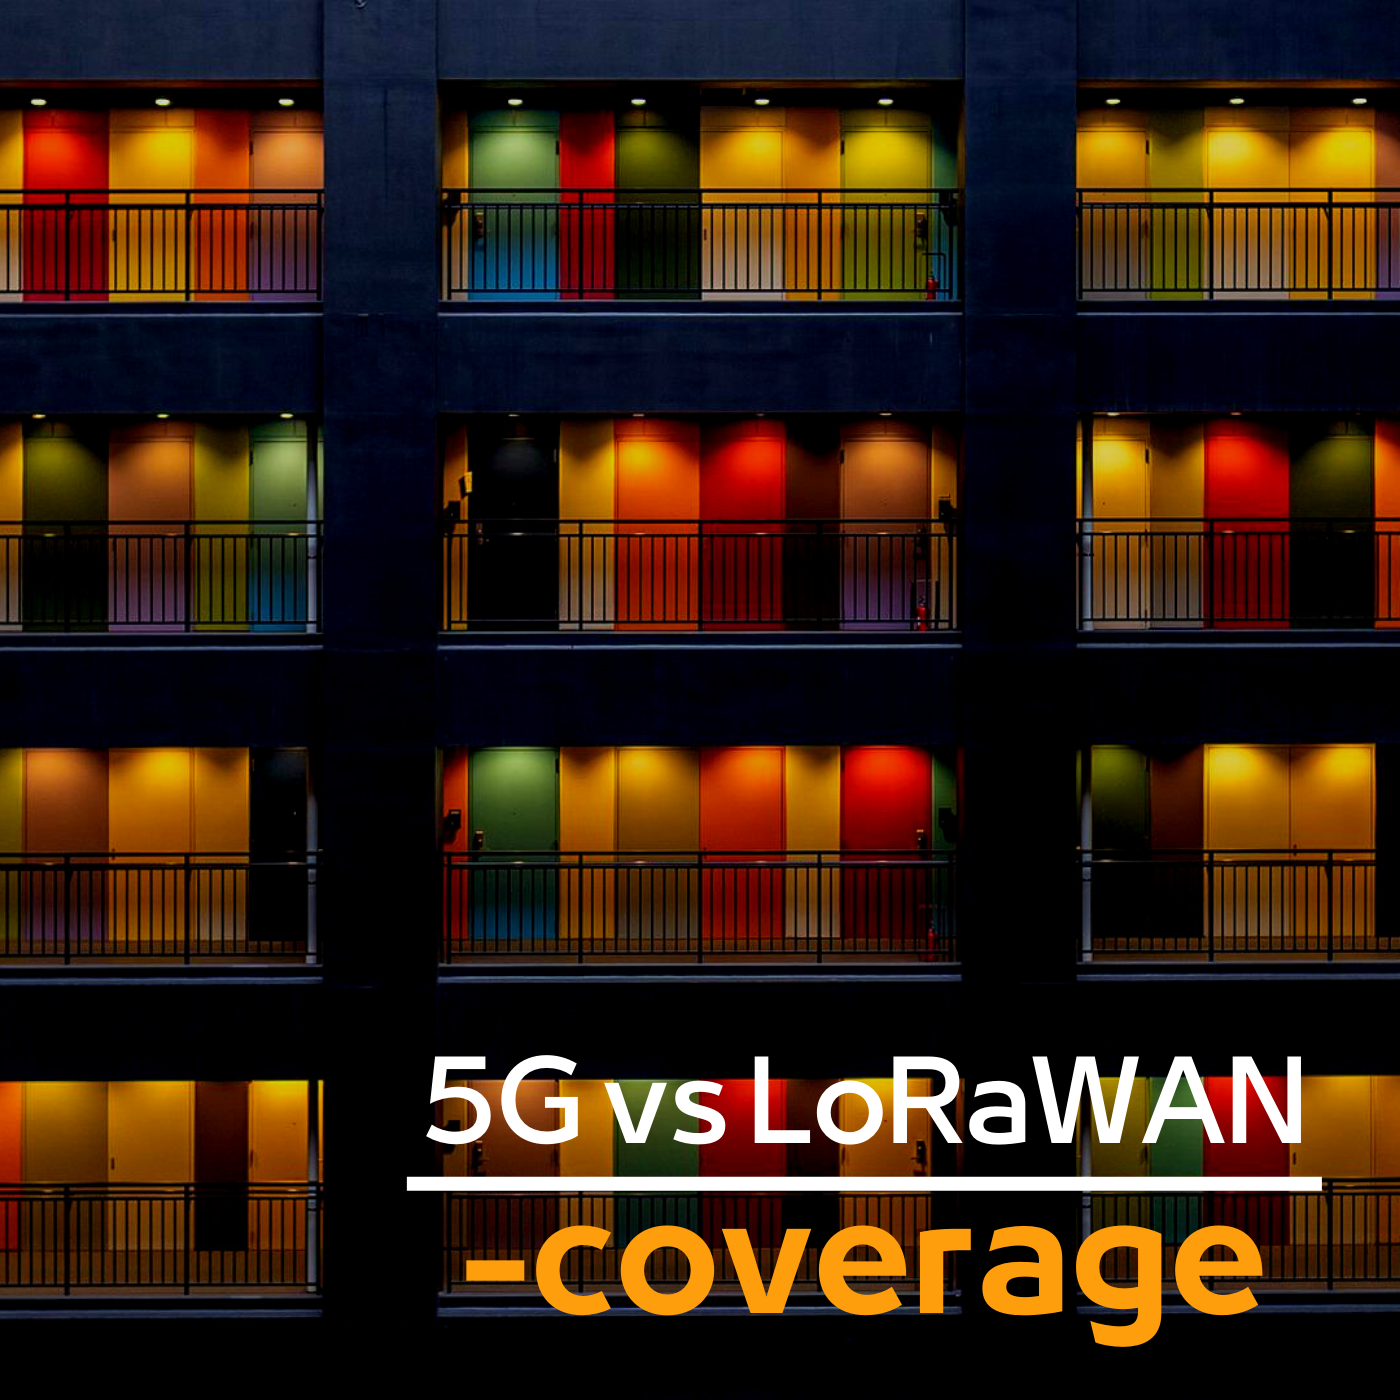 5g vs LoRaWAN coverage